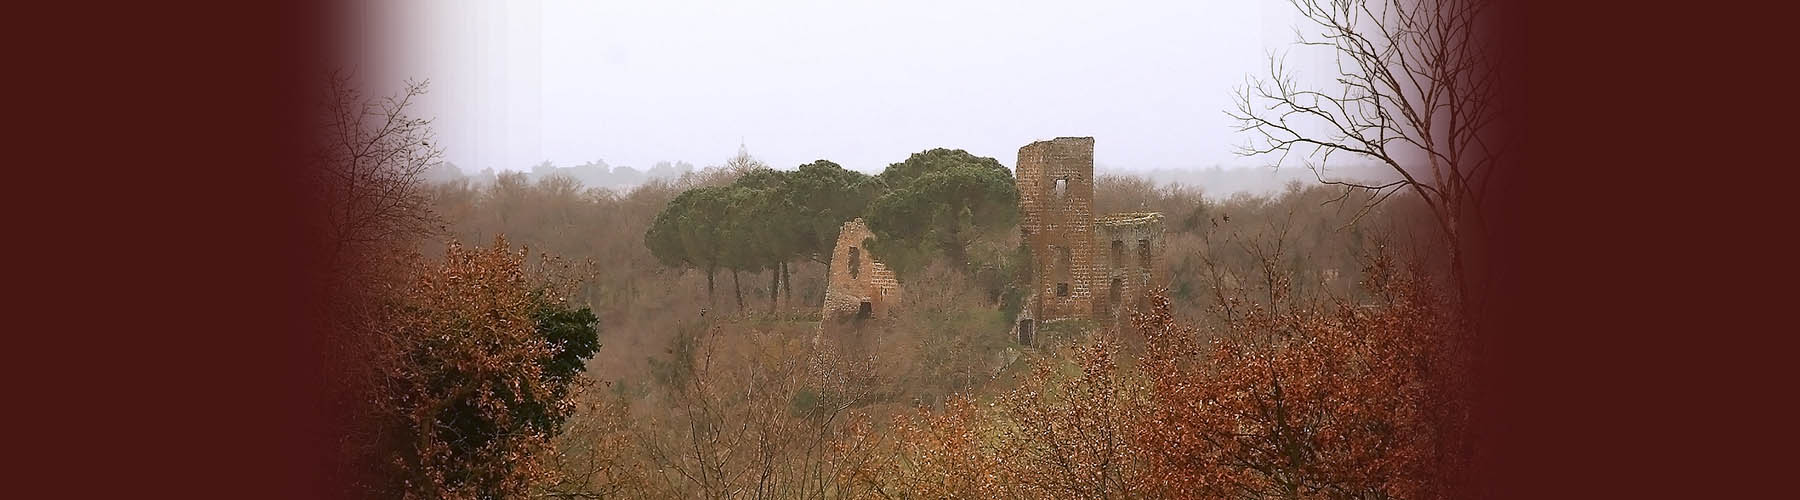 Castel Cardinale